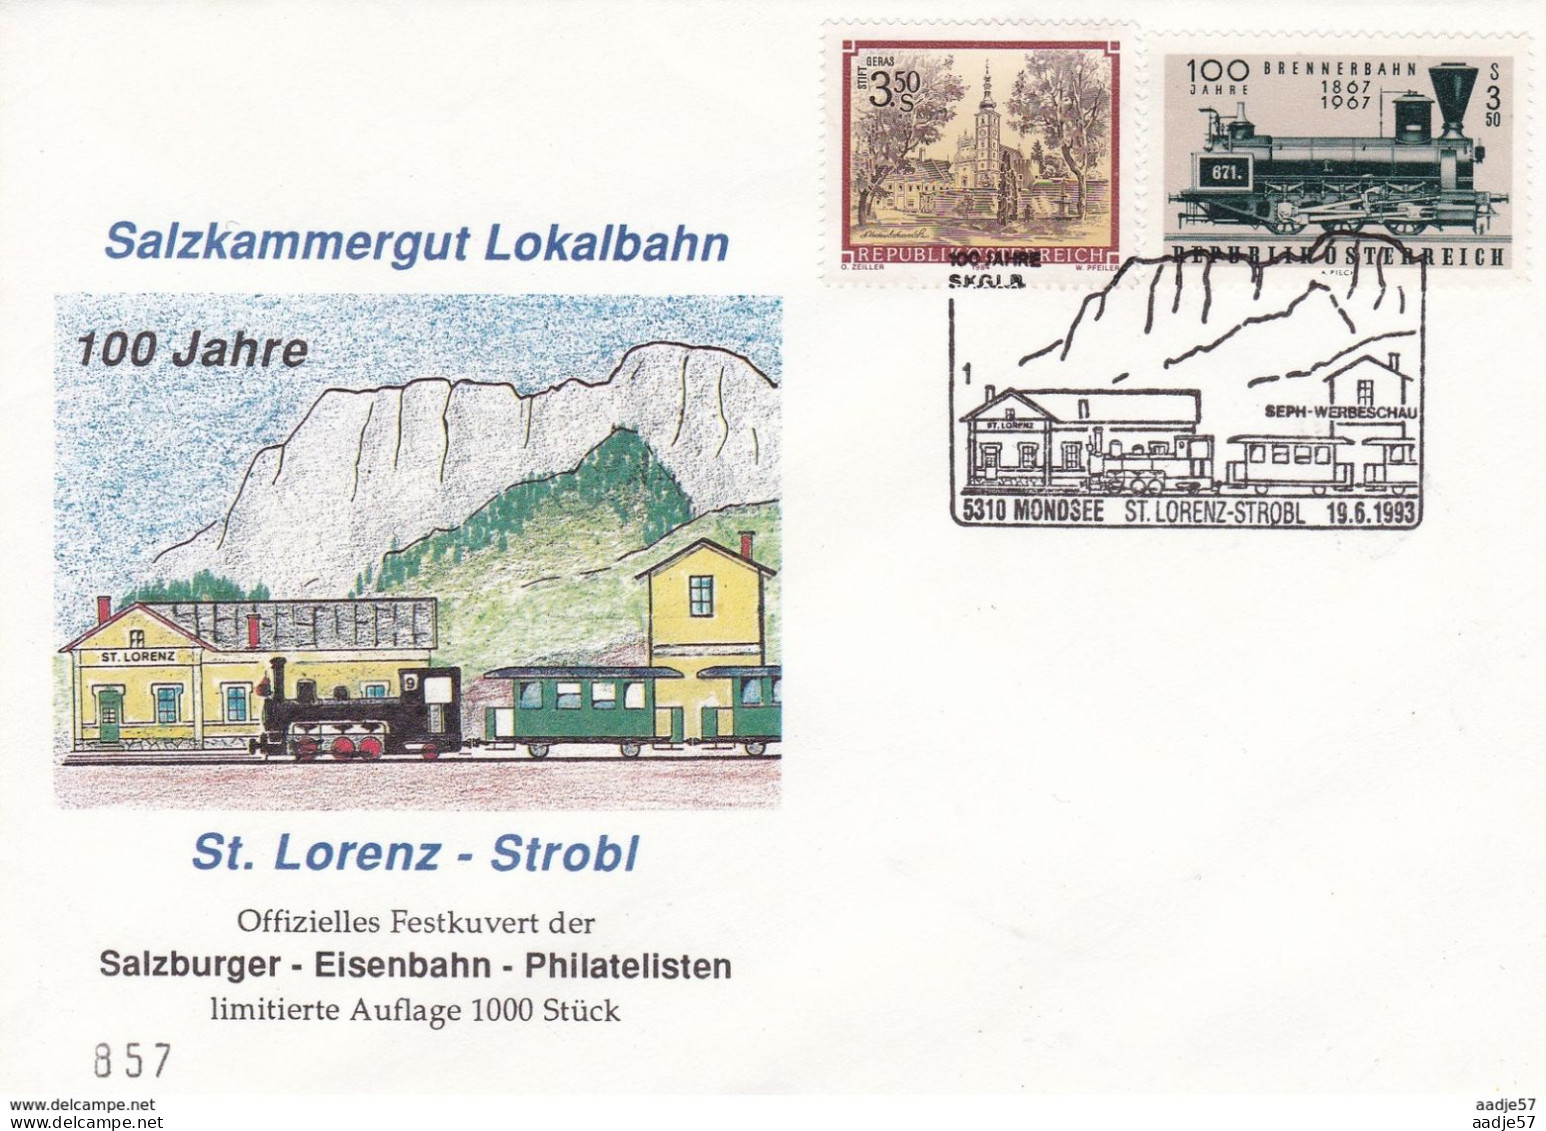 Austria Österreich 19.06.1993 ST LORENZ STROBL RAILWAY 100th Anniv STEAM TRAIN EVENT COVER AUSTRIA - Trains